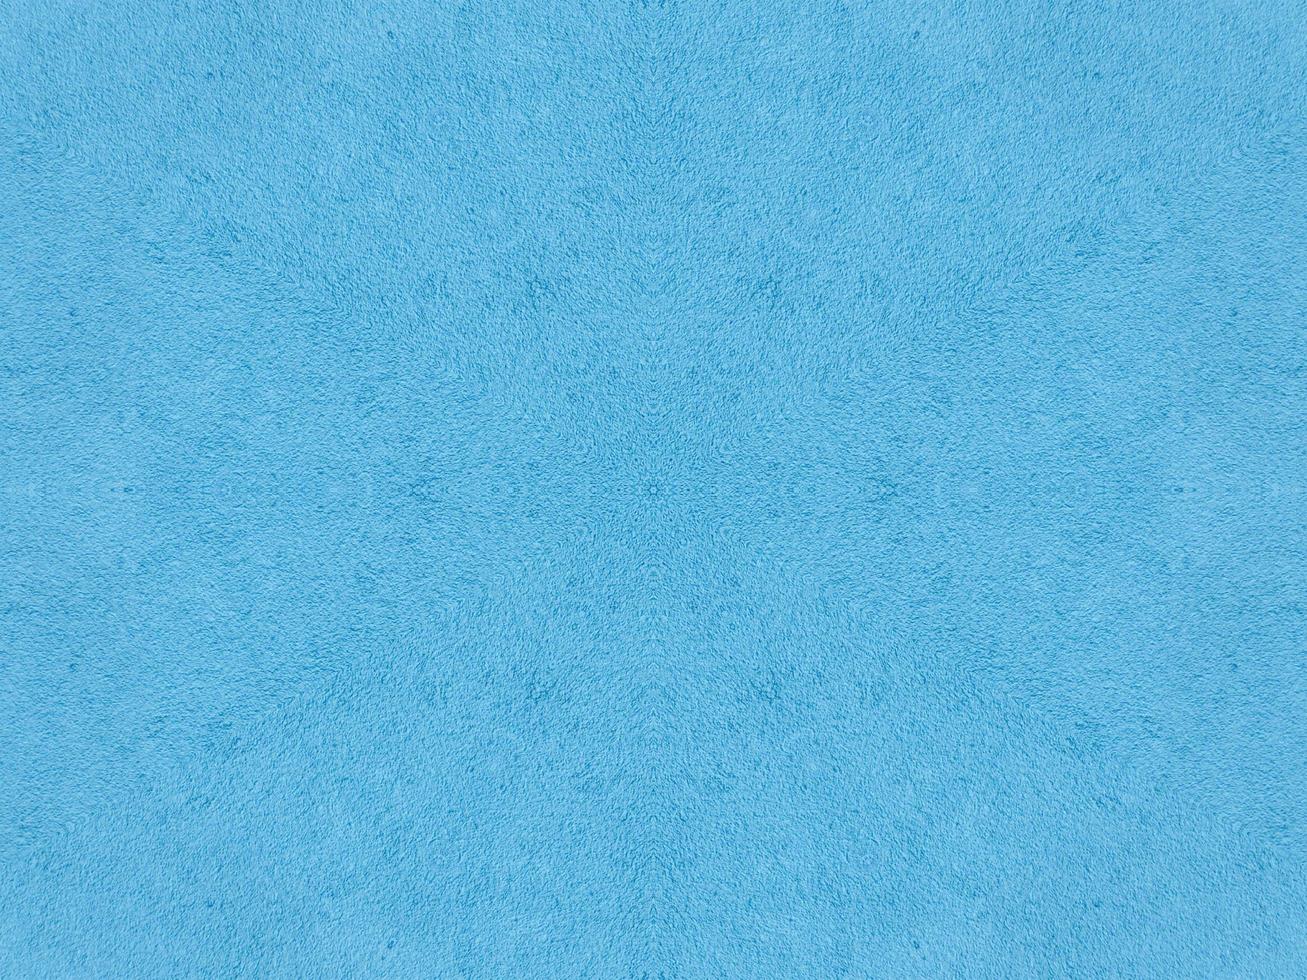 patrón de caleidoscopio azul liso. fondo abstracto. foto gratis.